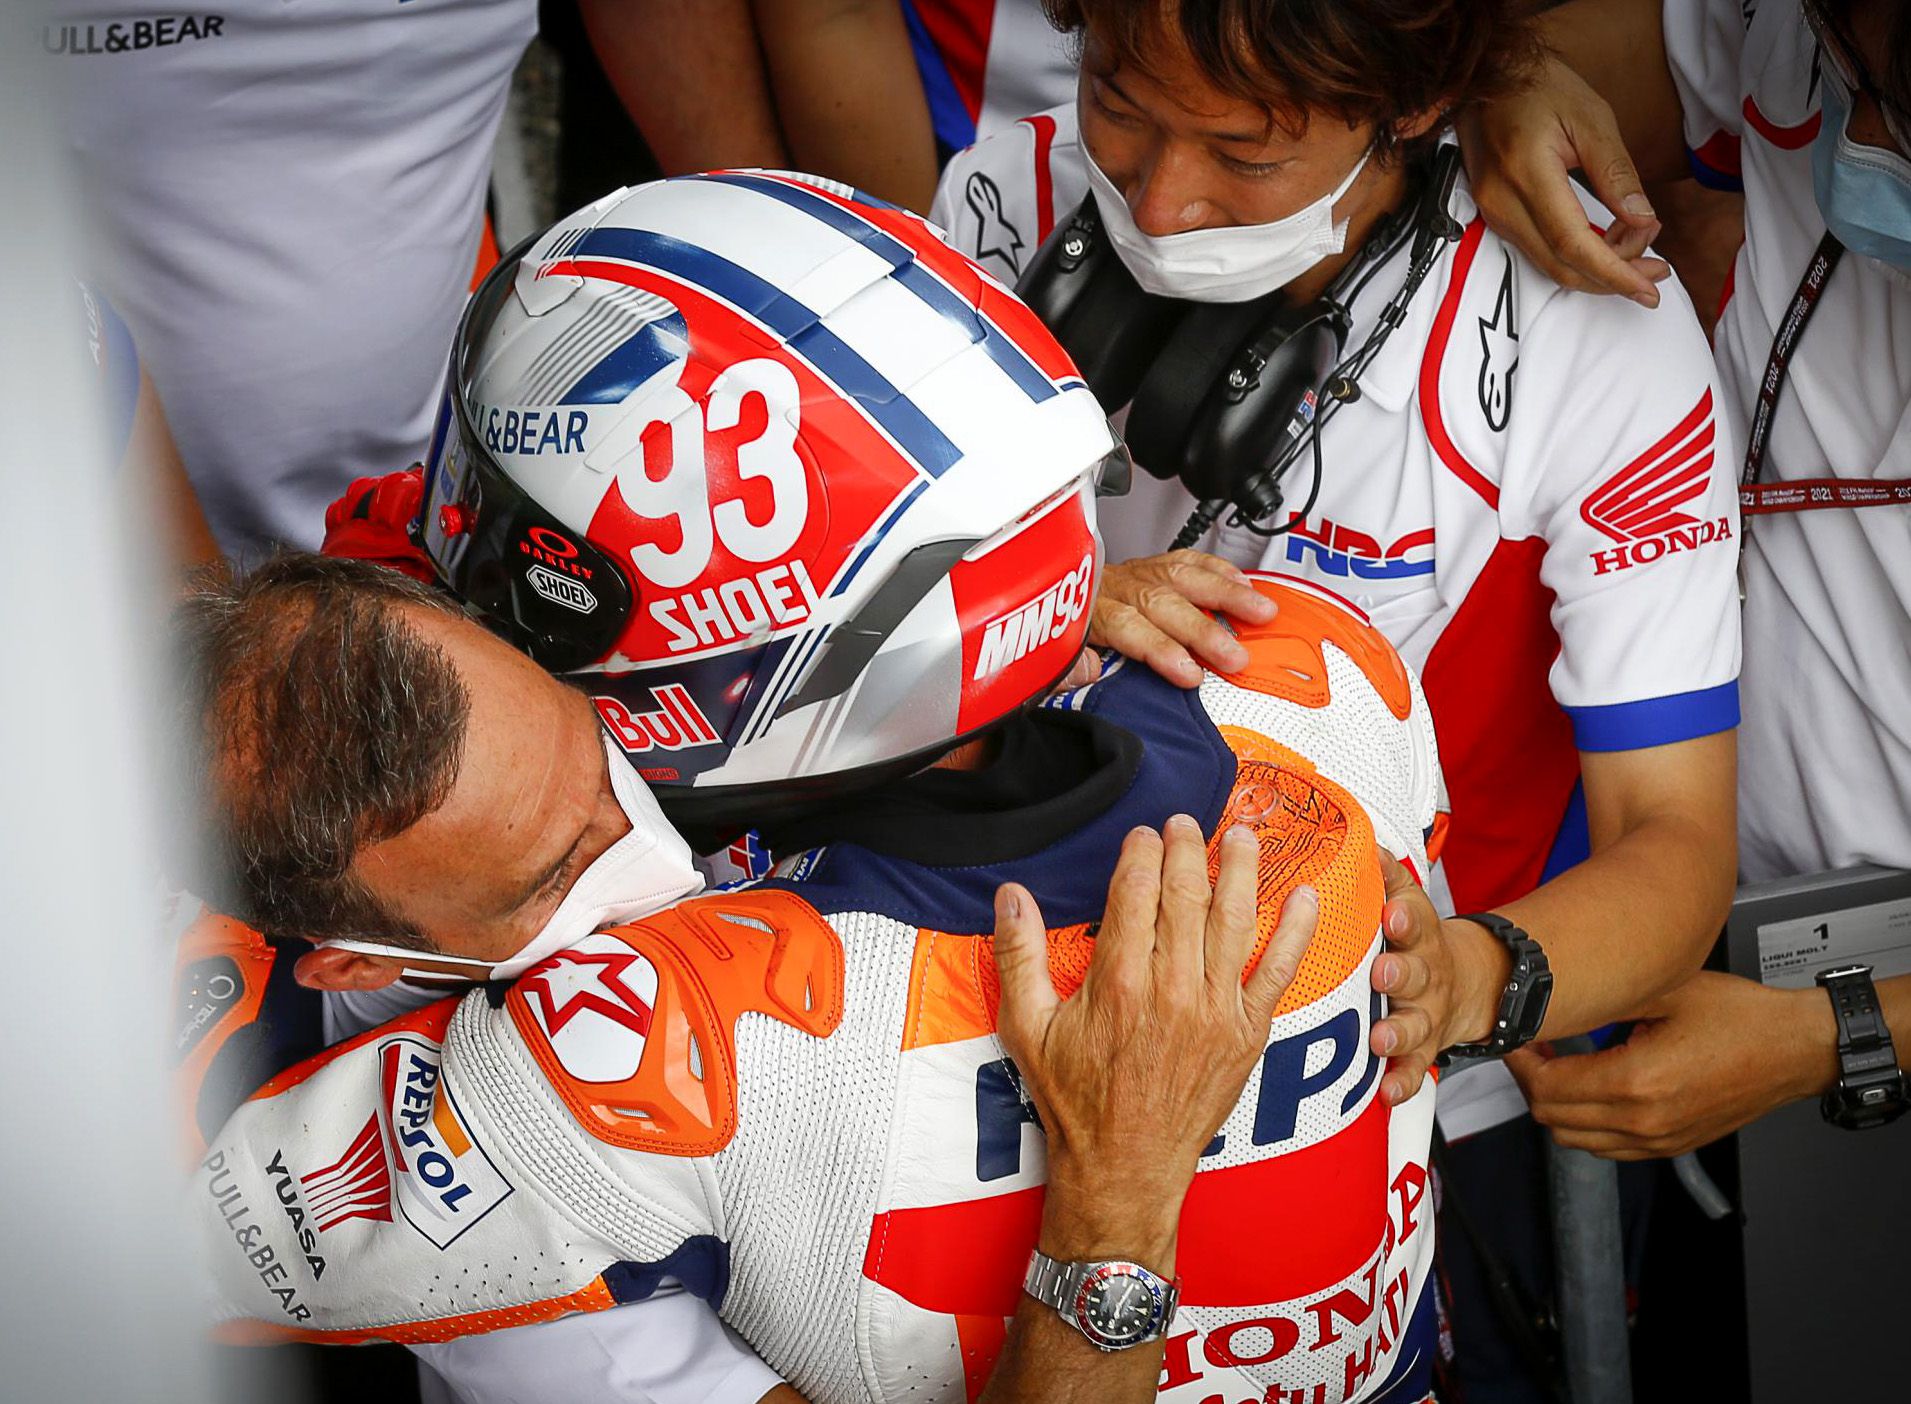 Marc Márquez vuelve a disfrutar en MotoGP, pero sufrió su primera